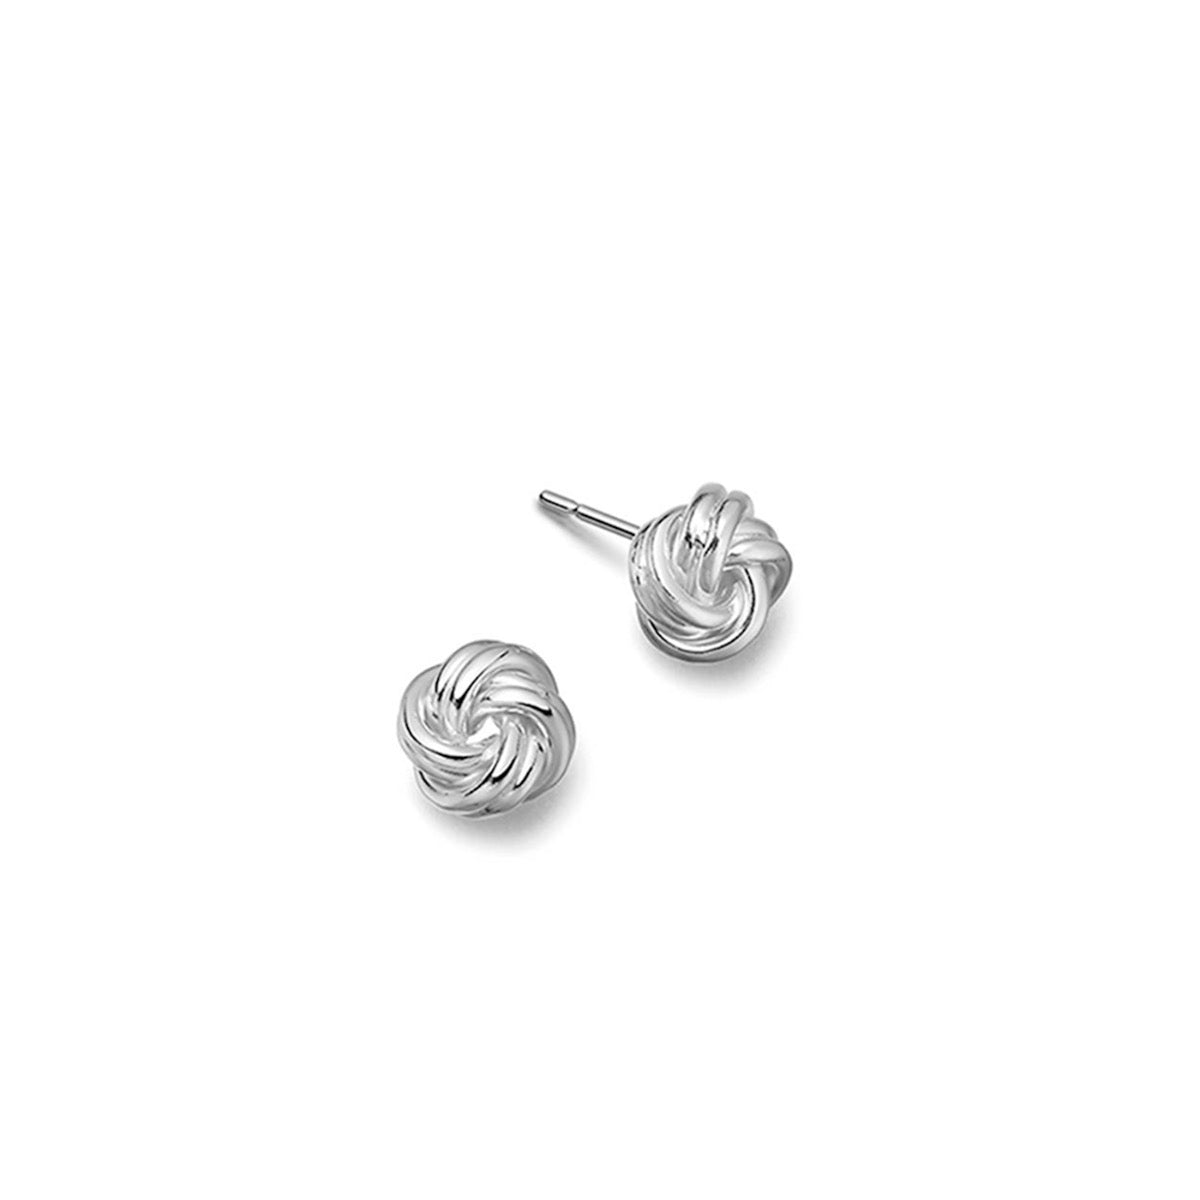 Silver Knot Stud Earrings || Hersey & Son Silversmiths